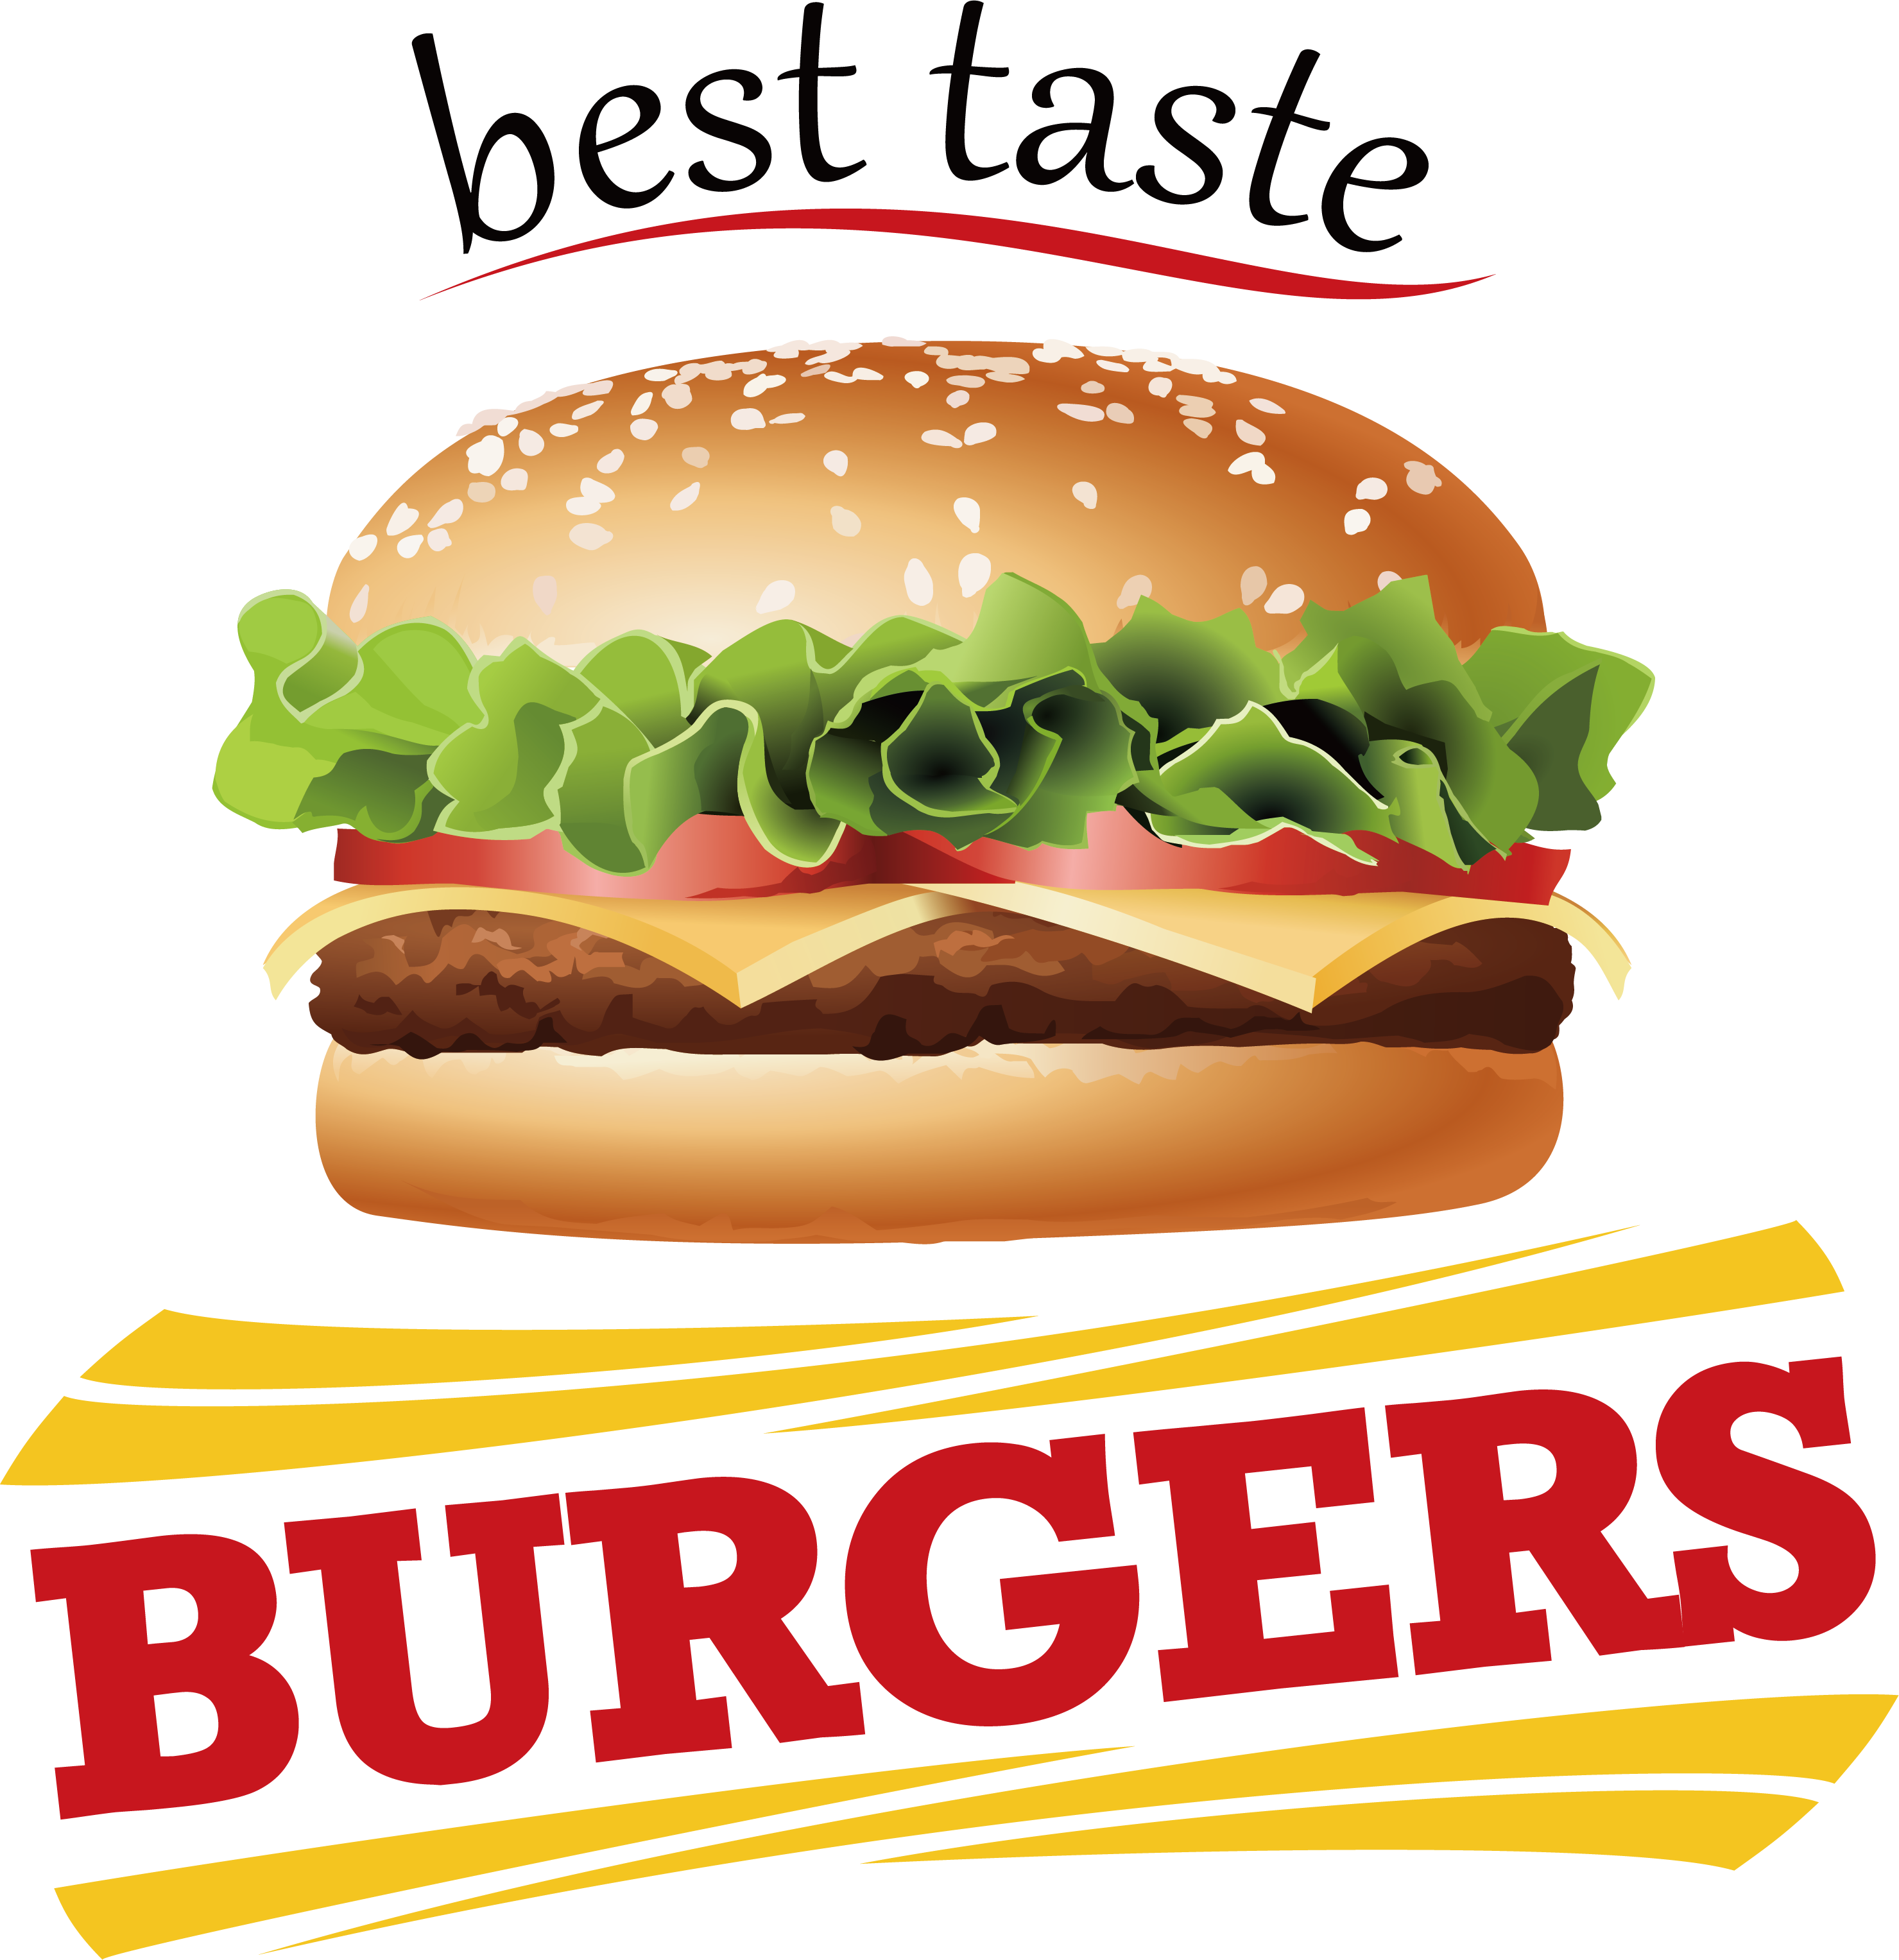 King Hamburger Food Fries Dog French Burger PNG Image